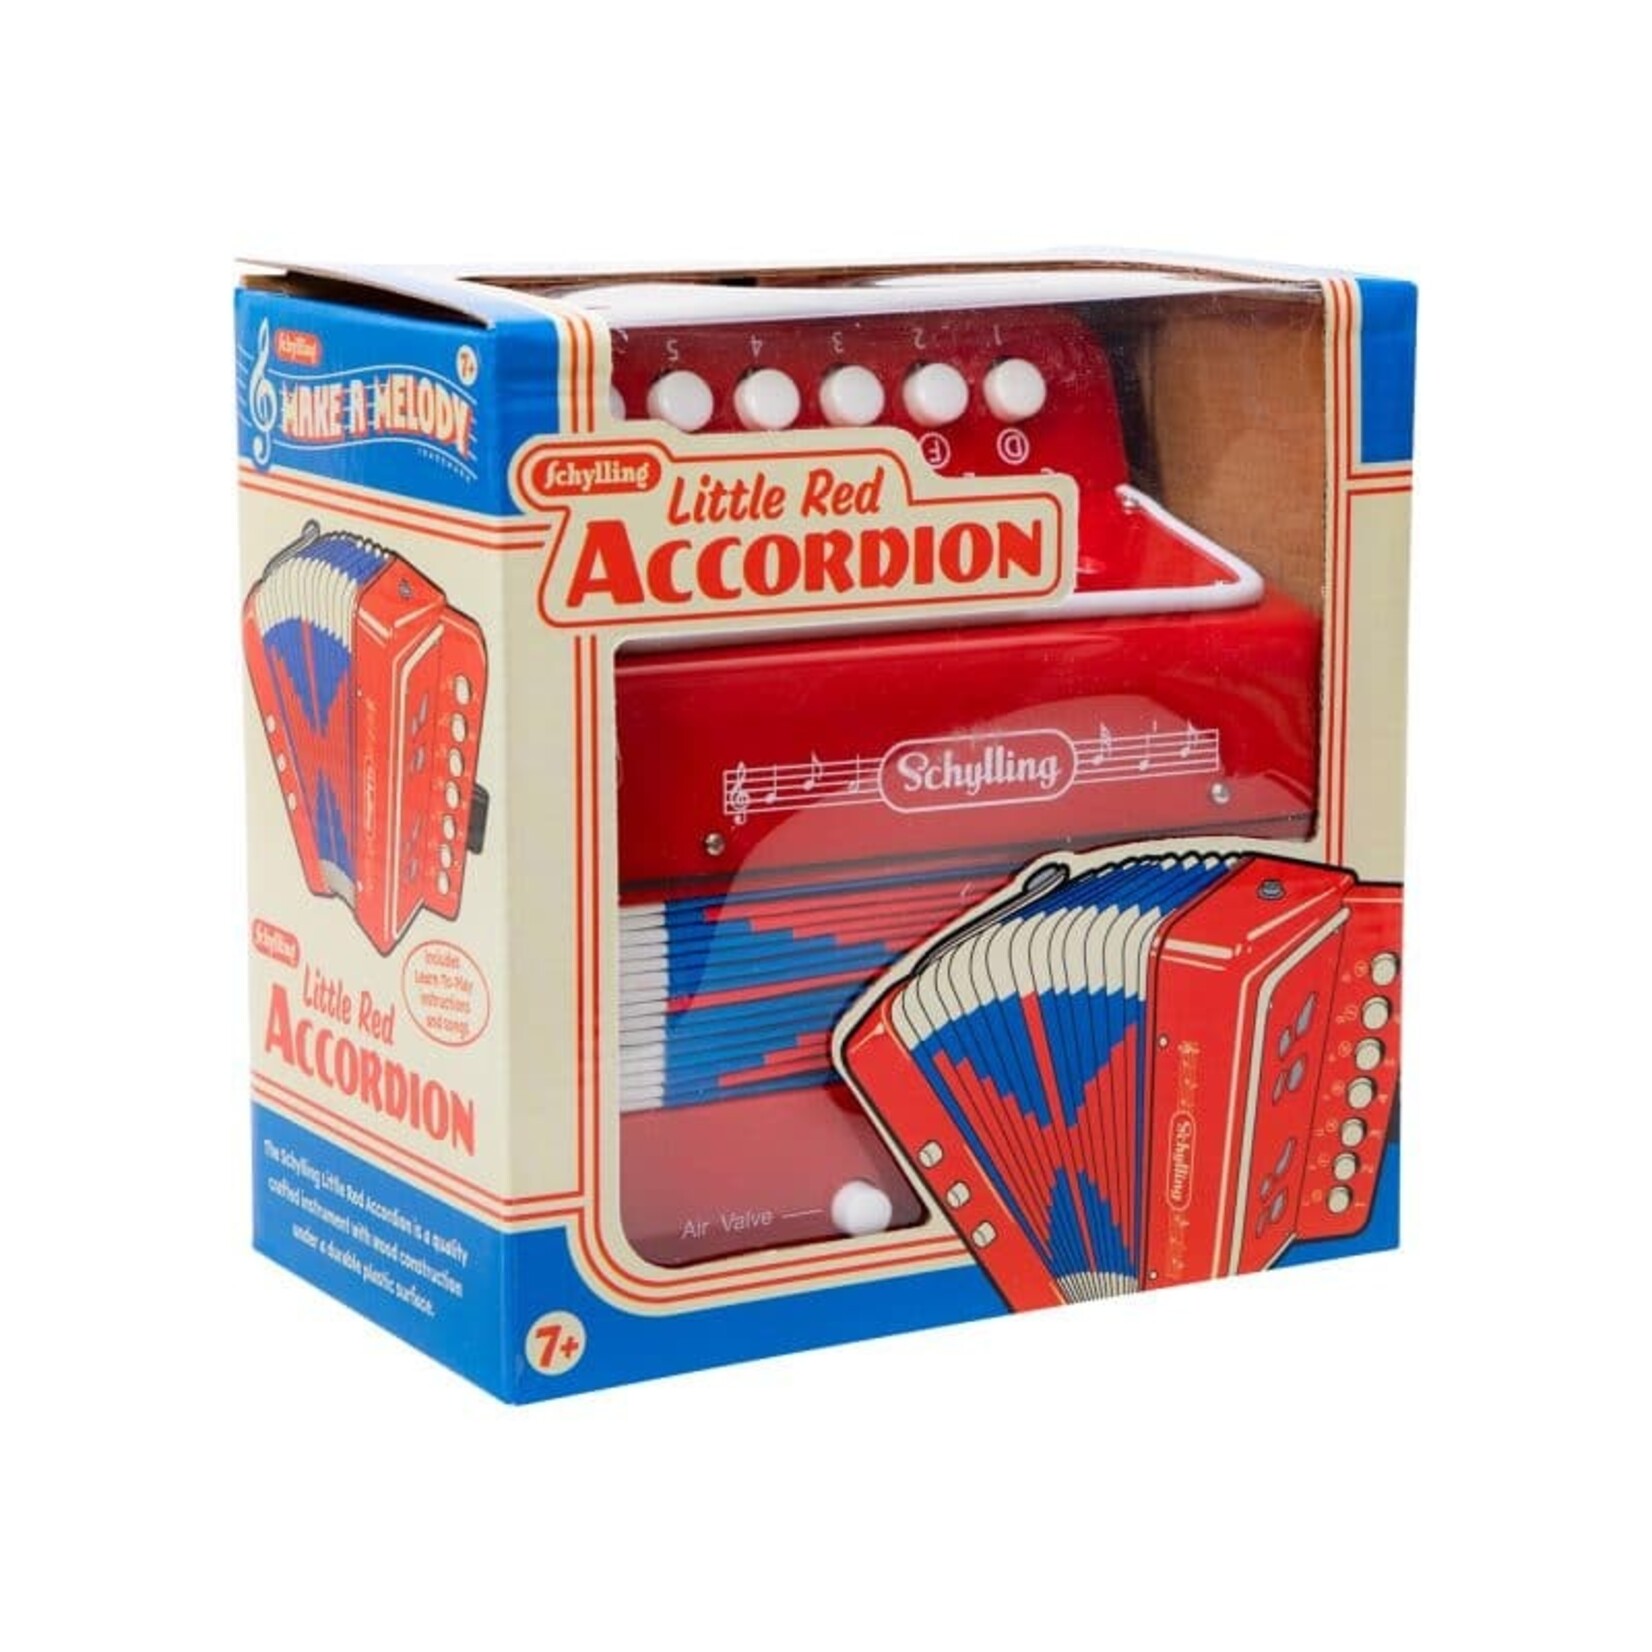 Accordion Toy